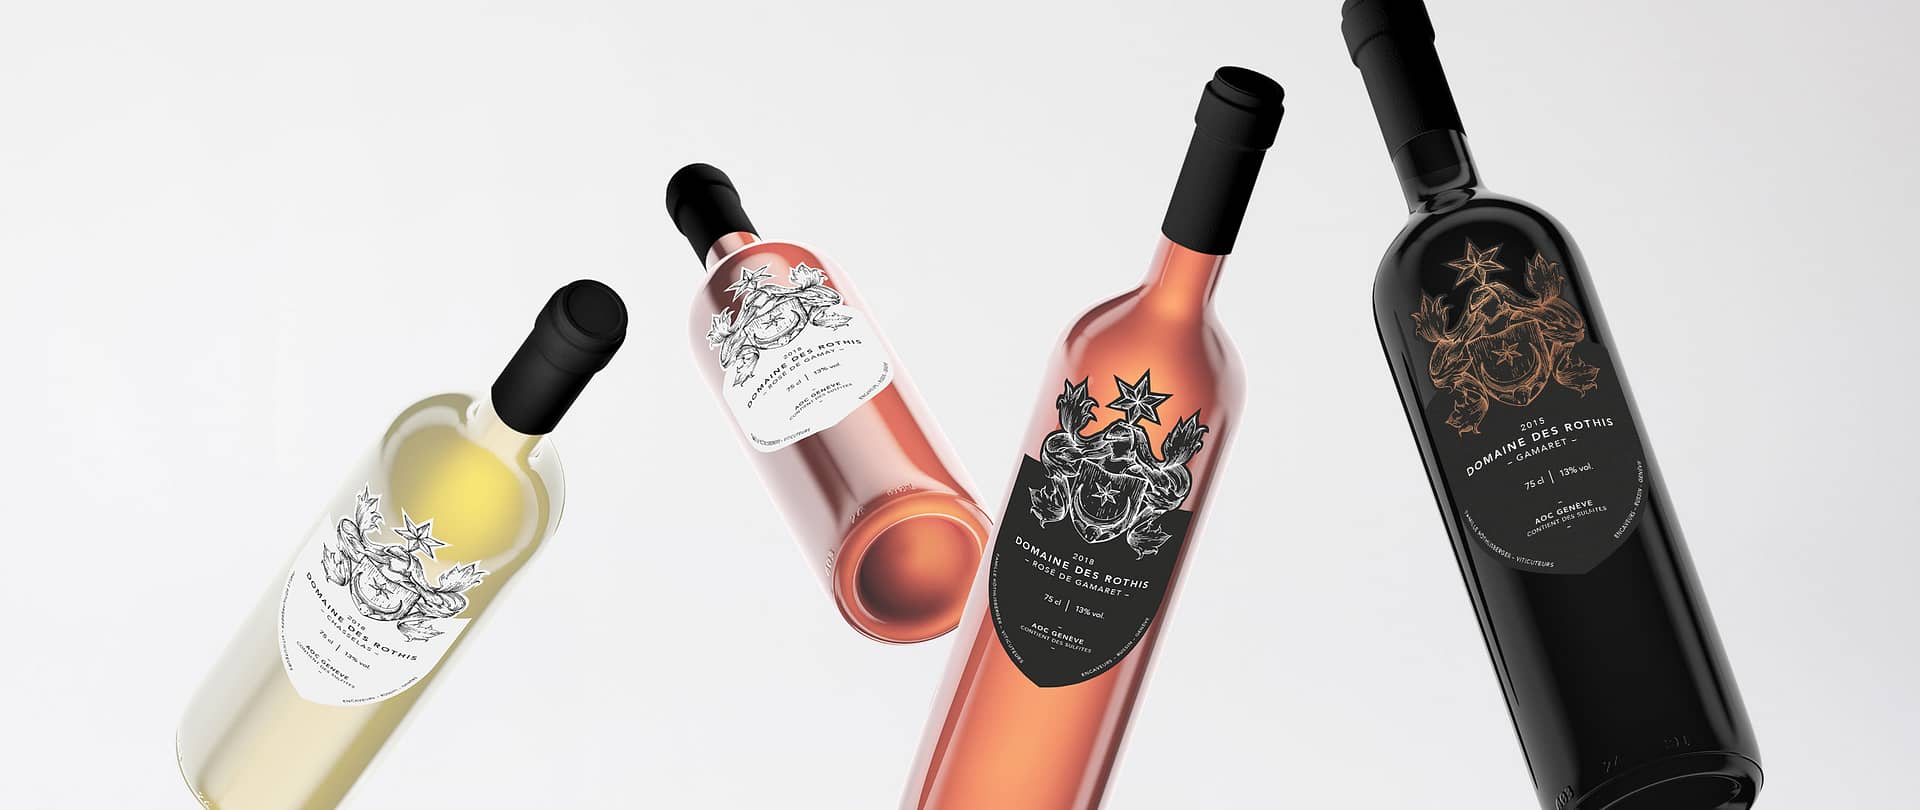 Photographie de quatre bouteilles de vin de la gamme des Domaines des Rothis.